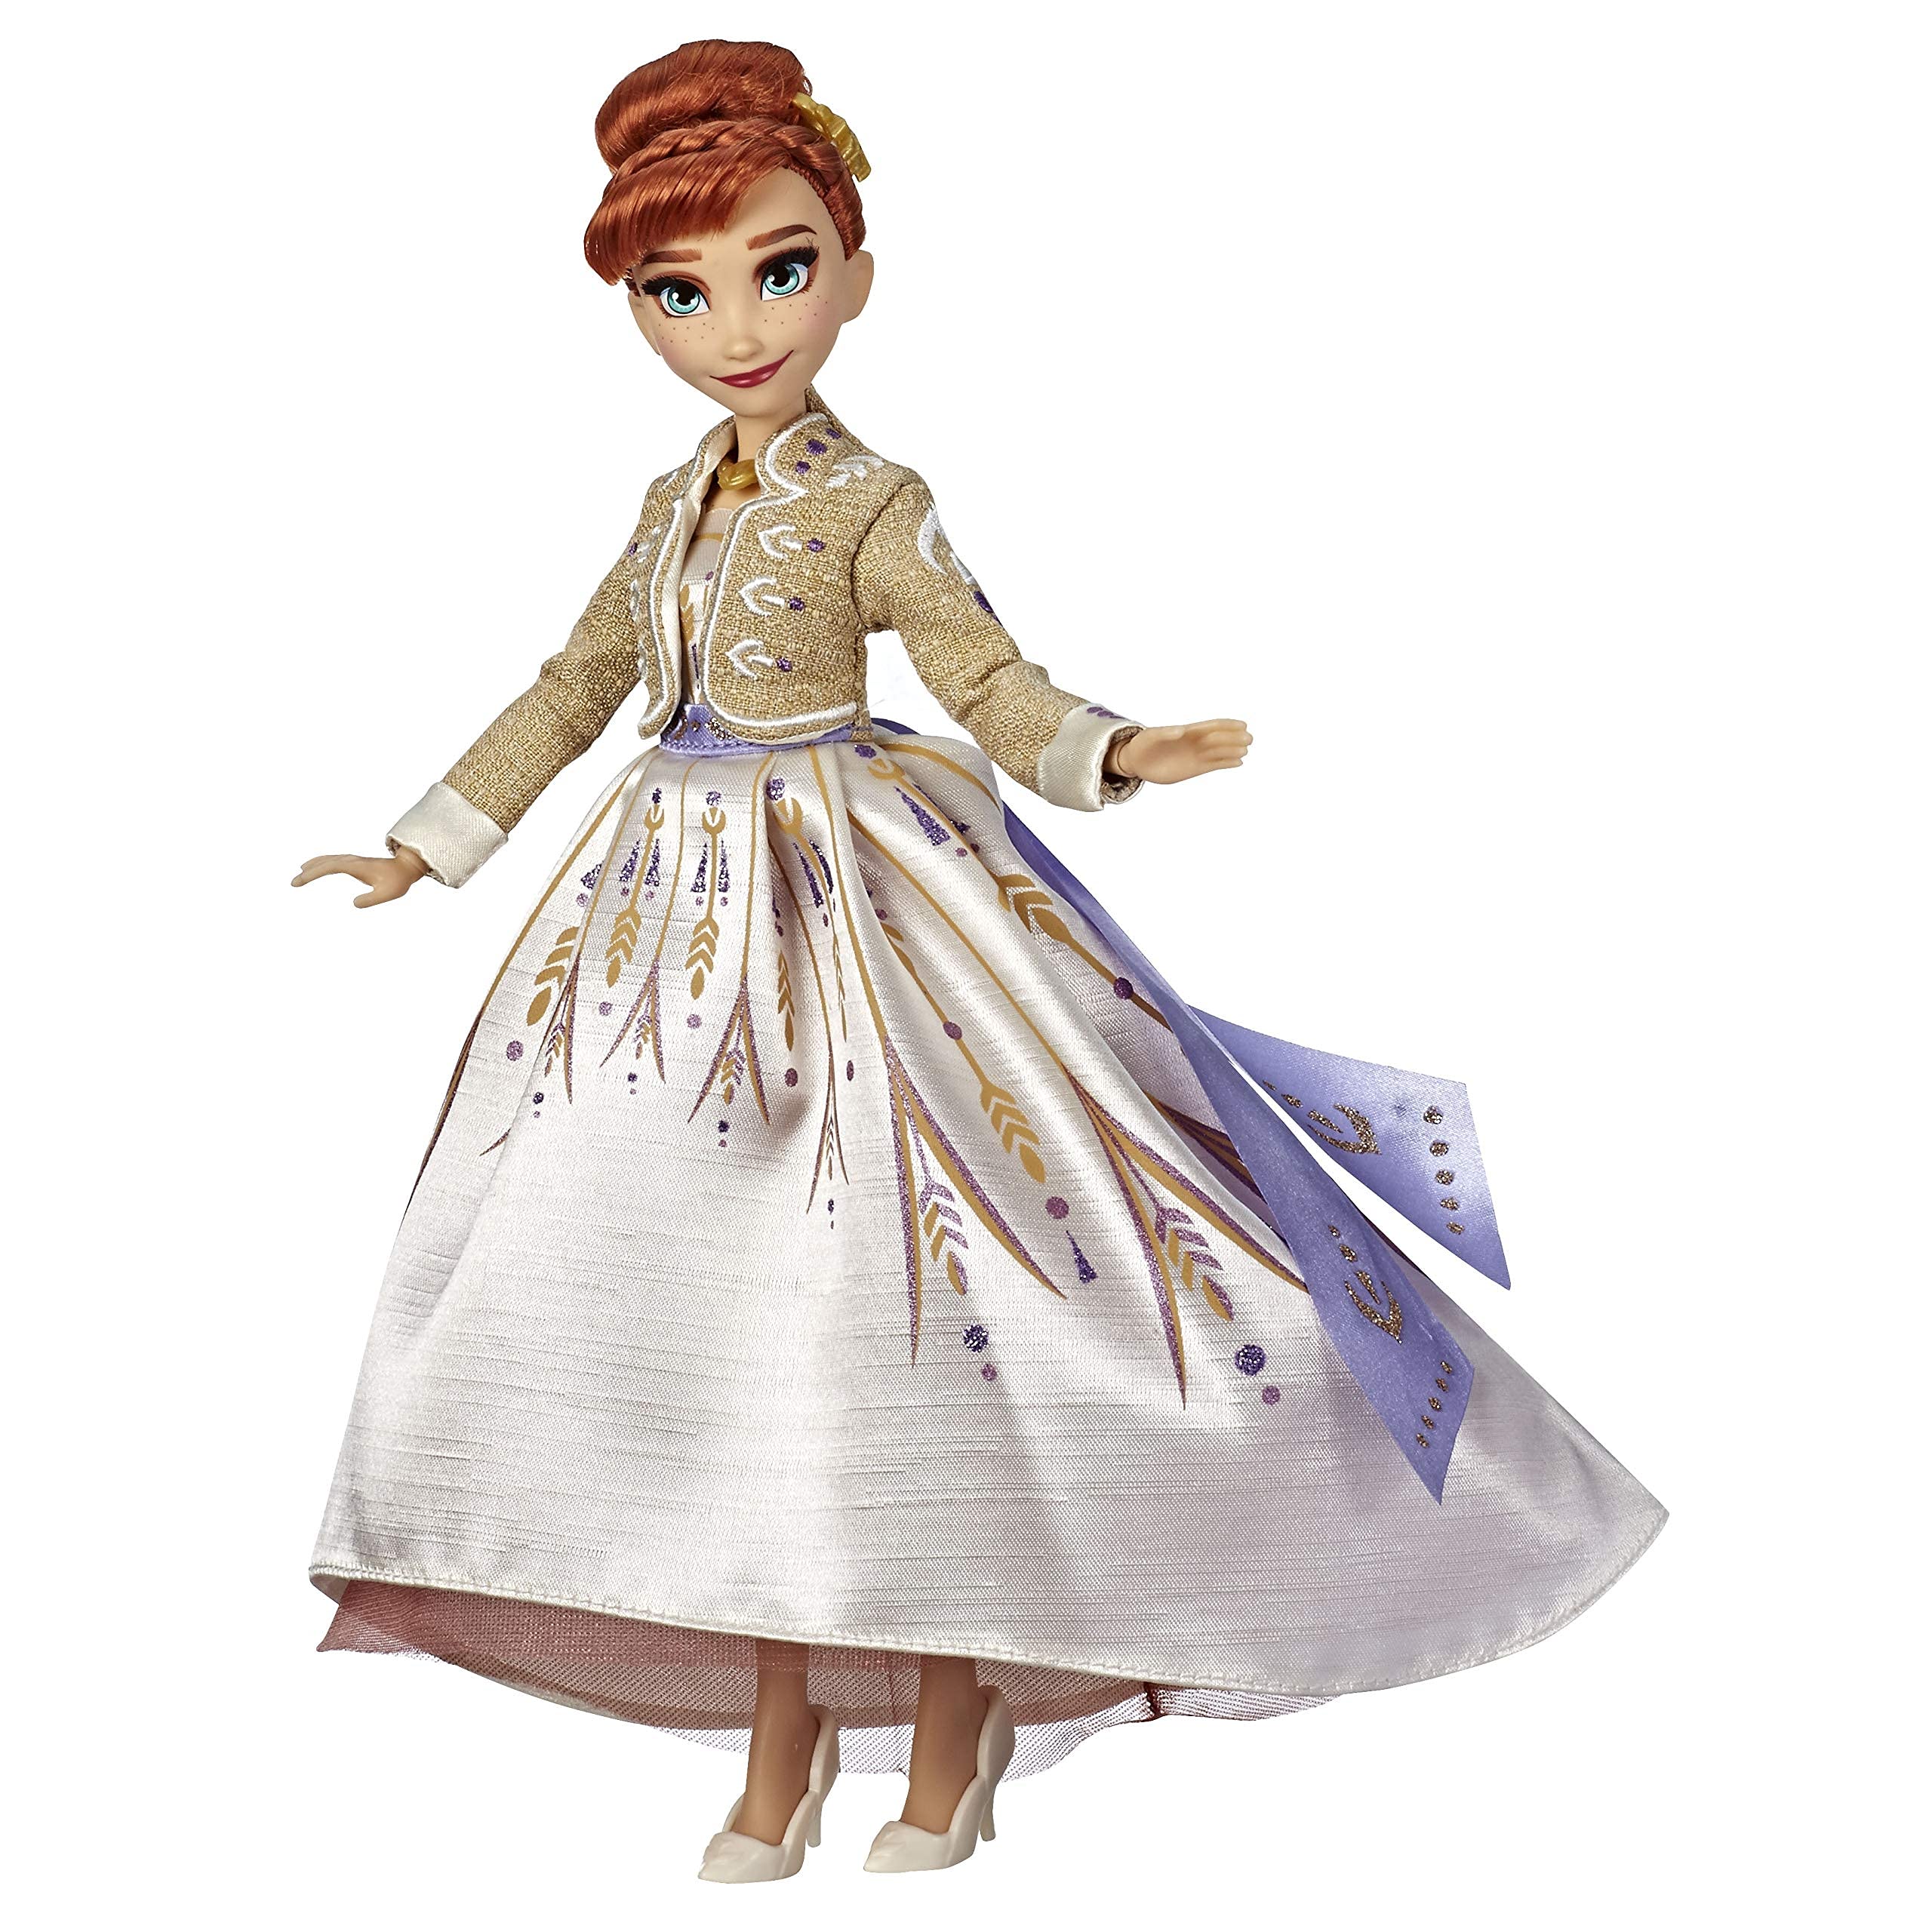 Disney Die Eiskönigin Anna aus Arendelle Deluxe Modepuppe mit glitzerndem, weißen Outfit, inspiriert von Disneys Die Eiskönigin 2 – Spielzeug für Kinder ab 3 Jahren